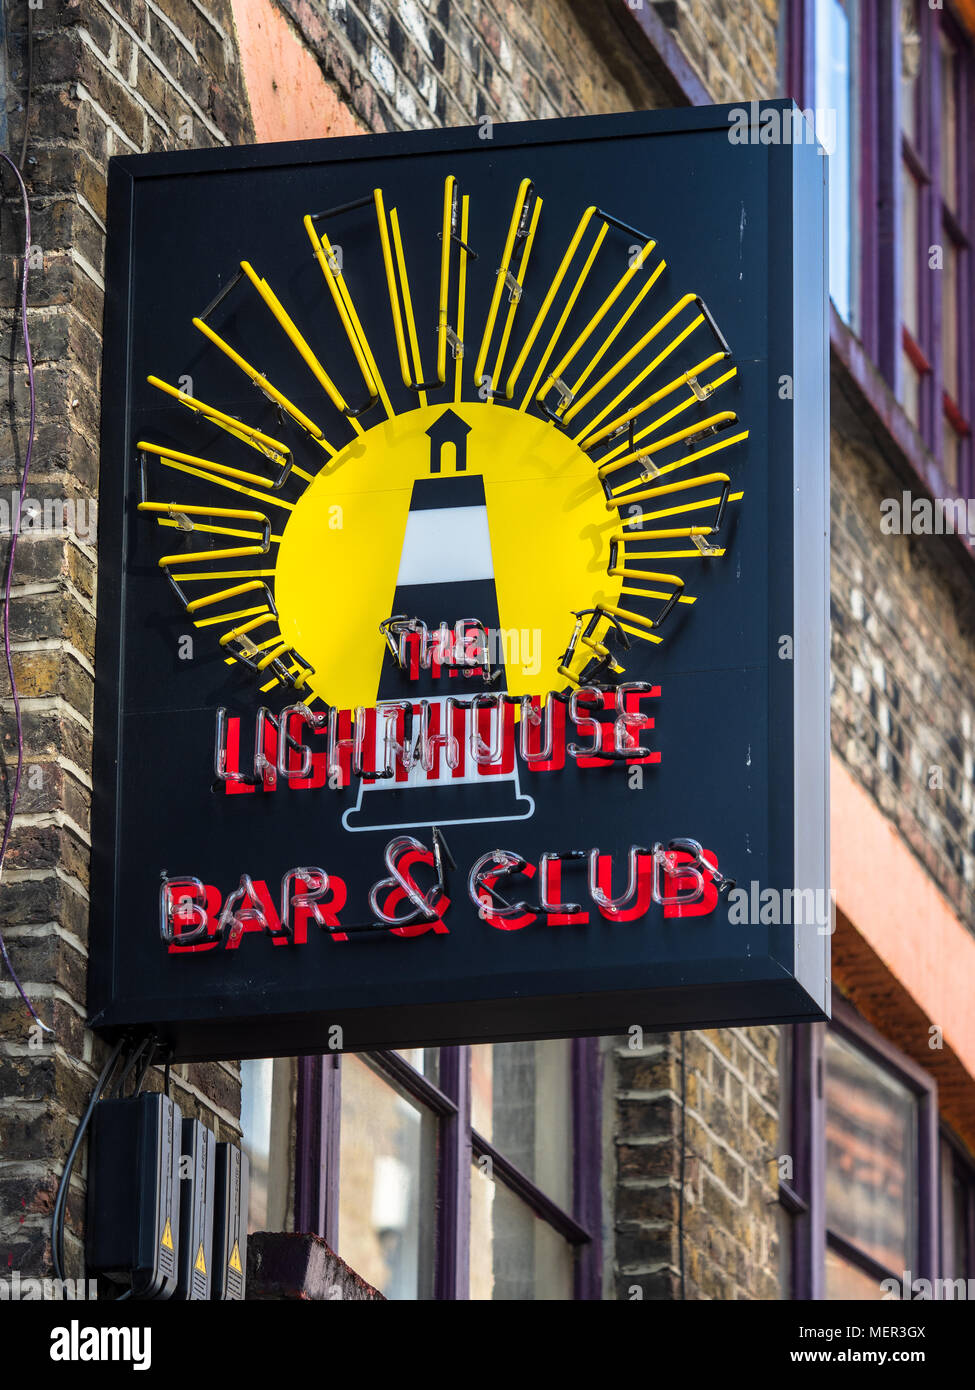 Lighthouse Bar & Club sign in Rivington Street à Shoreditch, un quartier à la mode de Londres Banque D'Images